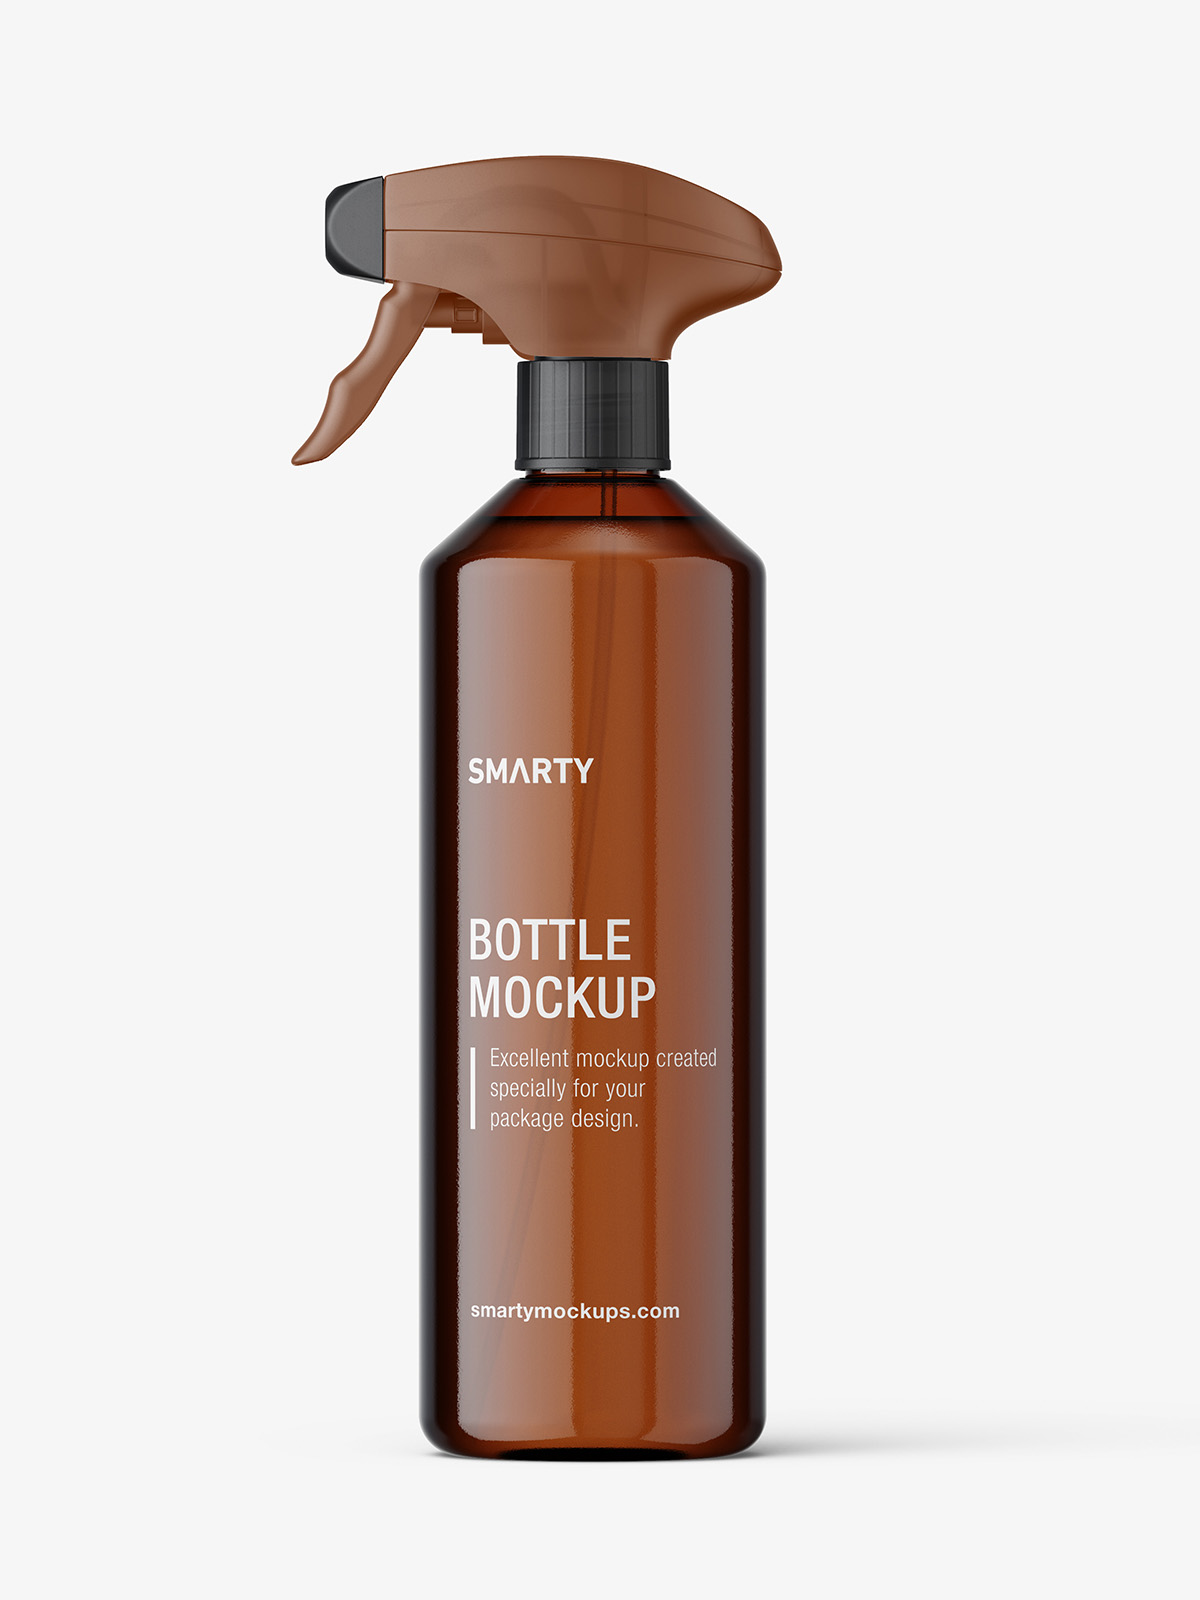 Download Bottle with trigger spray mockup / amber - Smarty Mockups